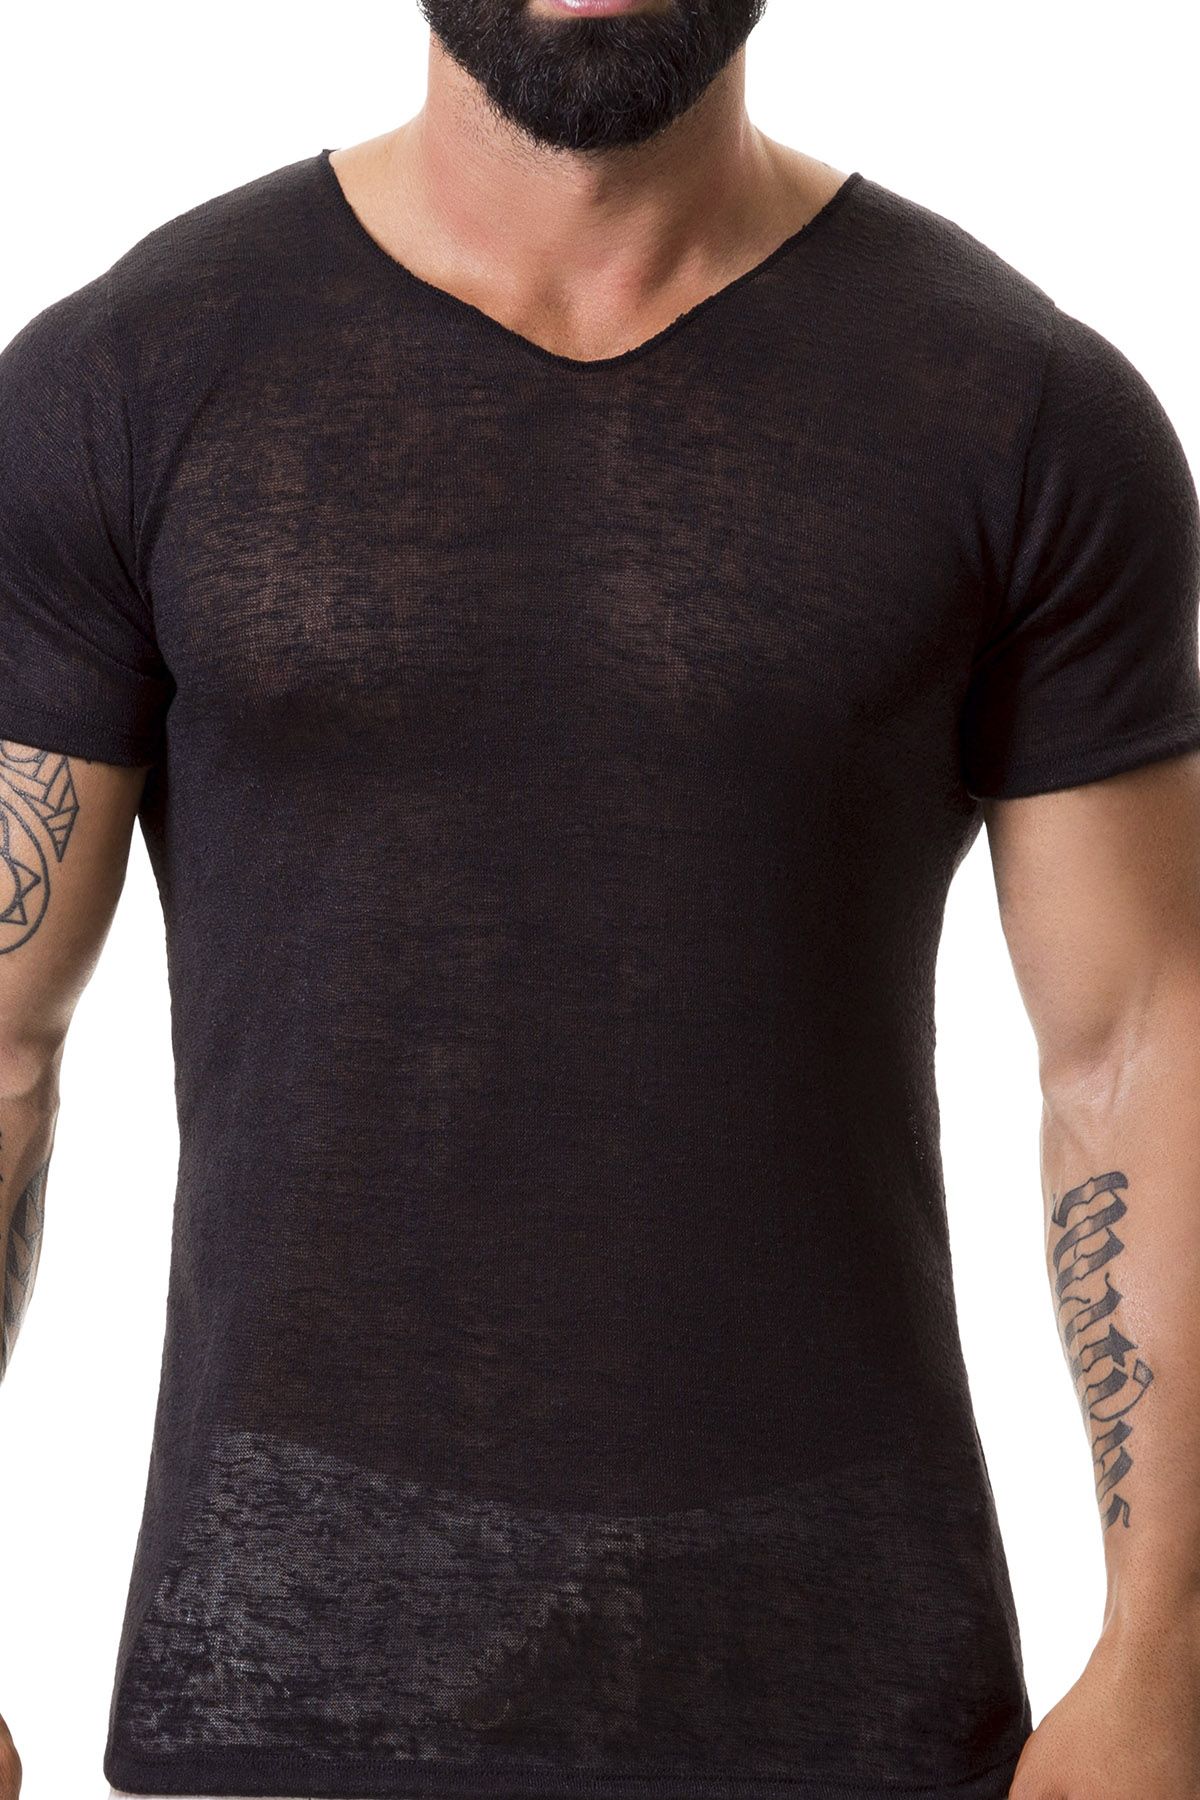 Jor 0370 Black  Maui Shirt